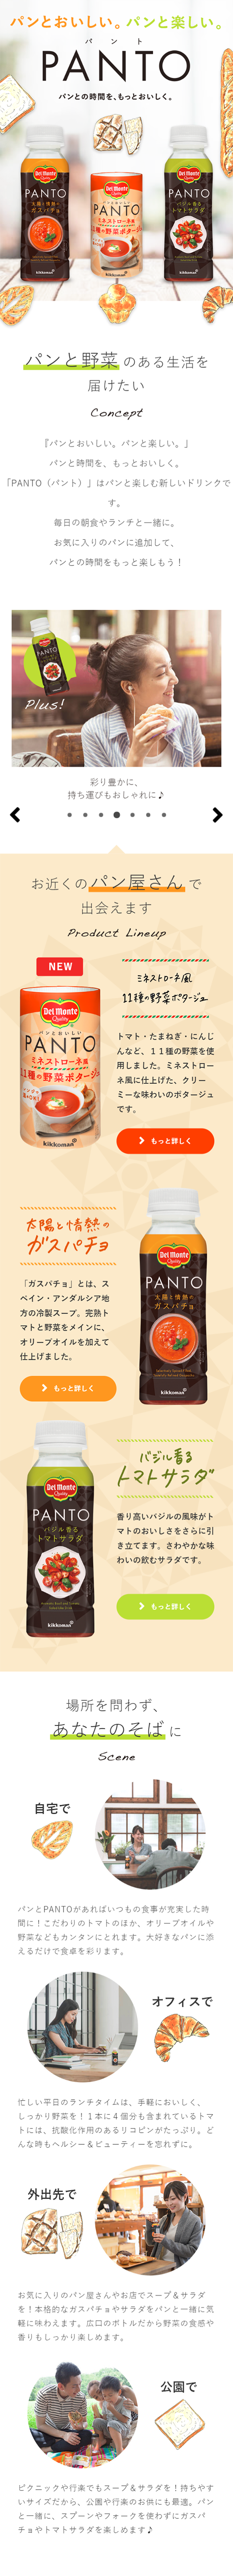 パン専用のトマト飲料 デルモンテ PANTO_sp_1